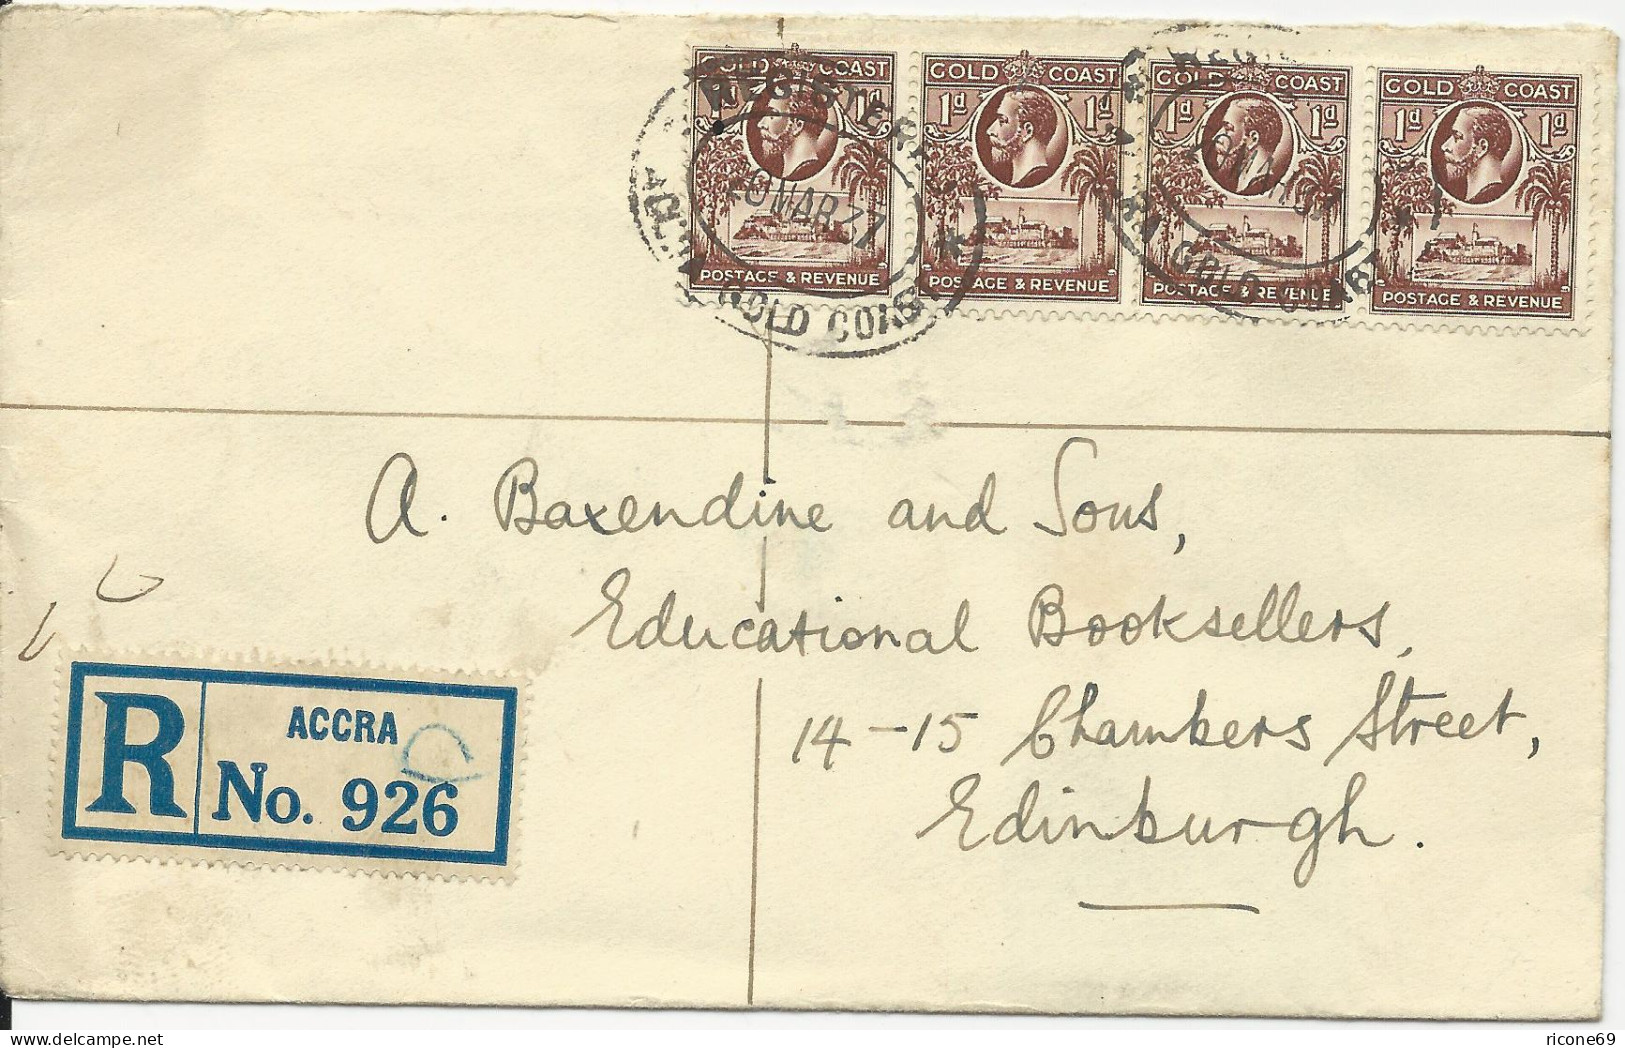 Gold Coast 1937, 4x1d Auf Einschreiben Brief V. Accra N. GB - Autres - Afrique